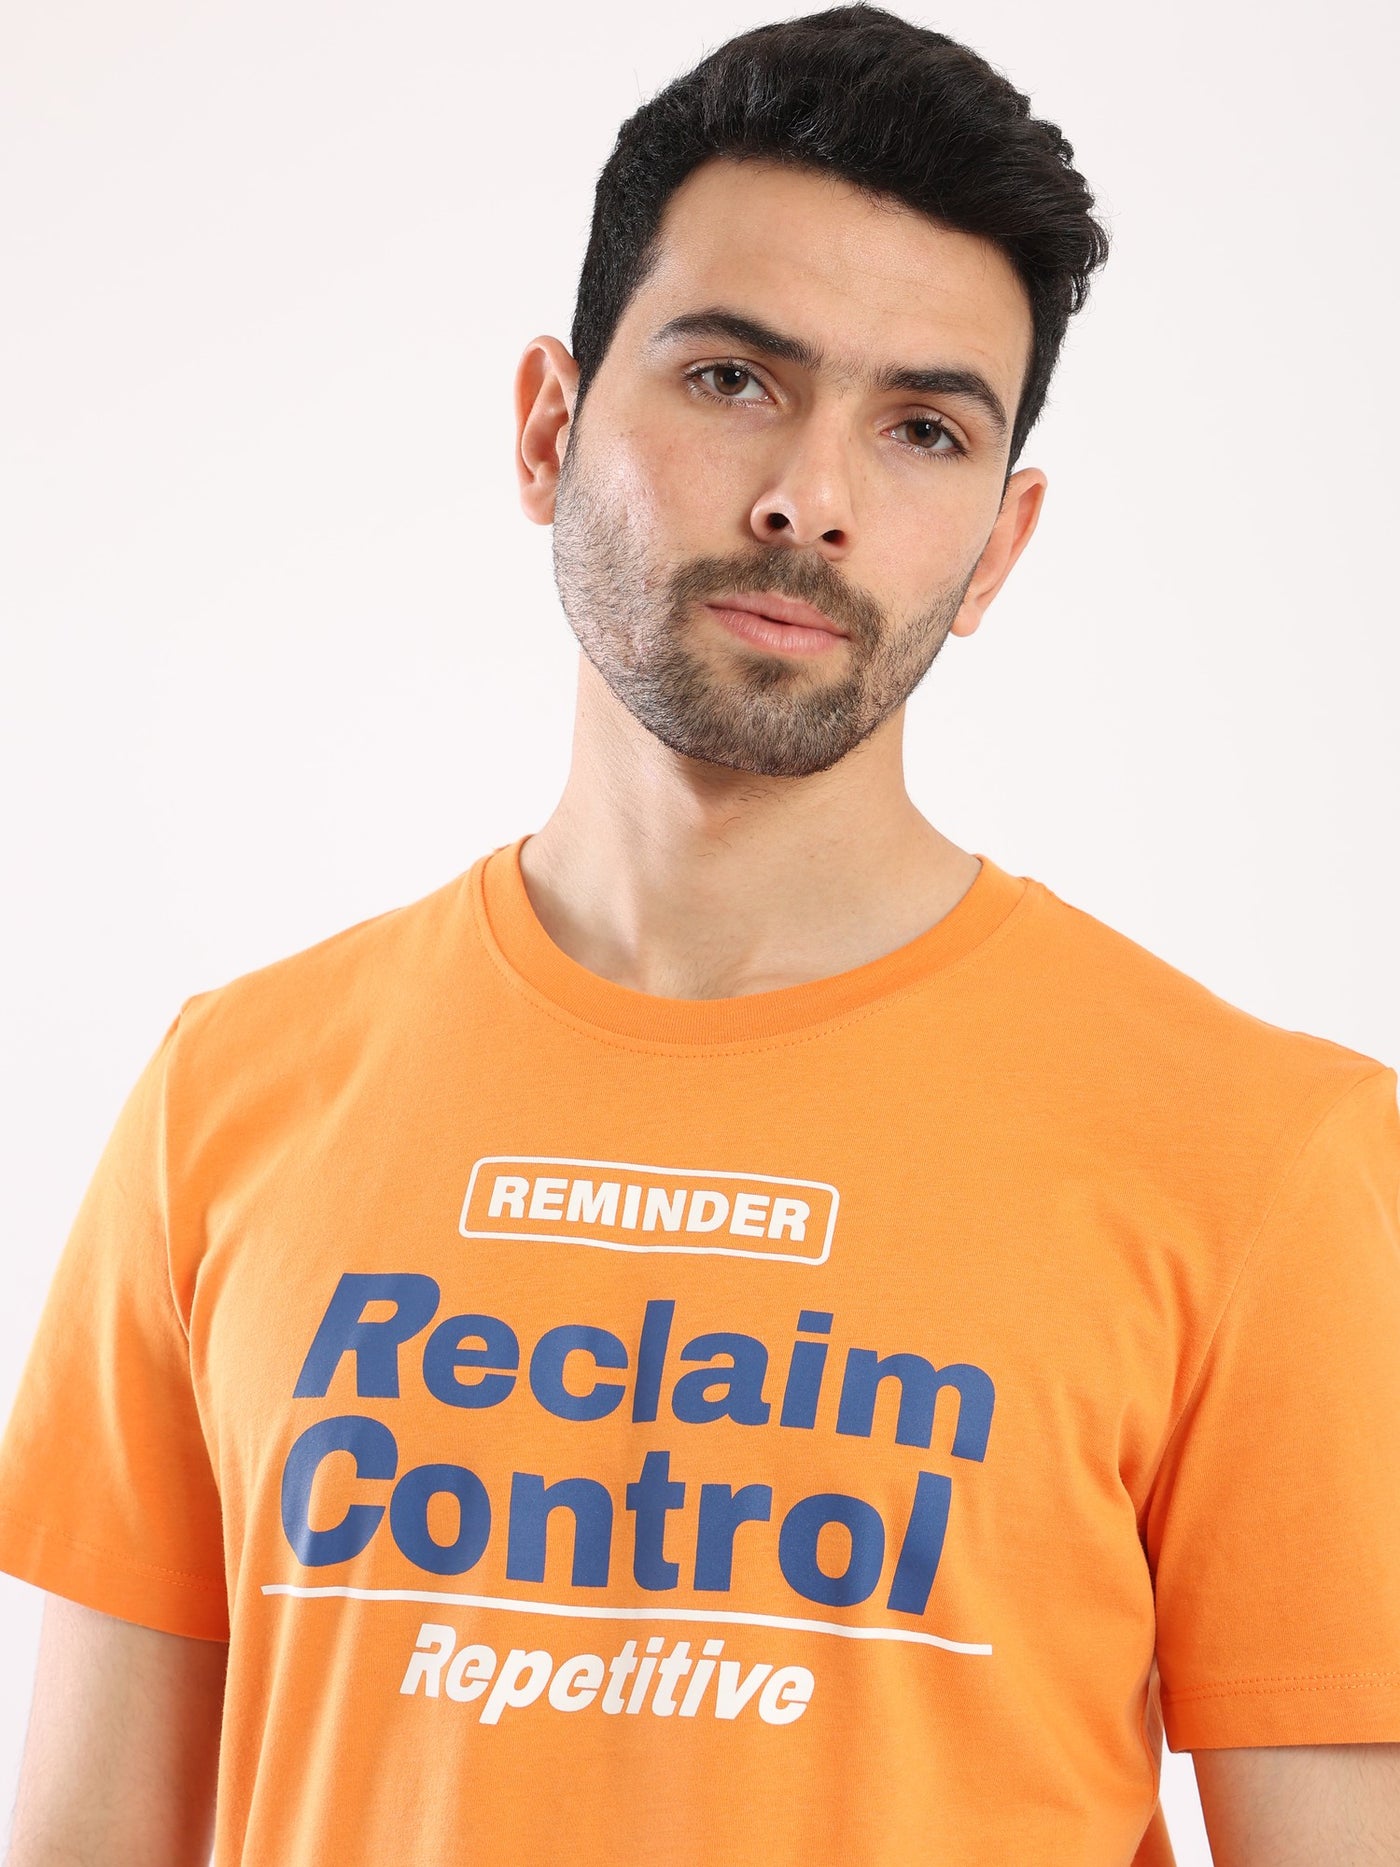 تيشيرت - "Reclaim Control" - سهل الأرتداء